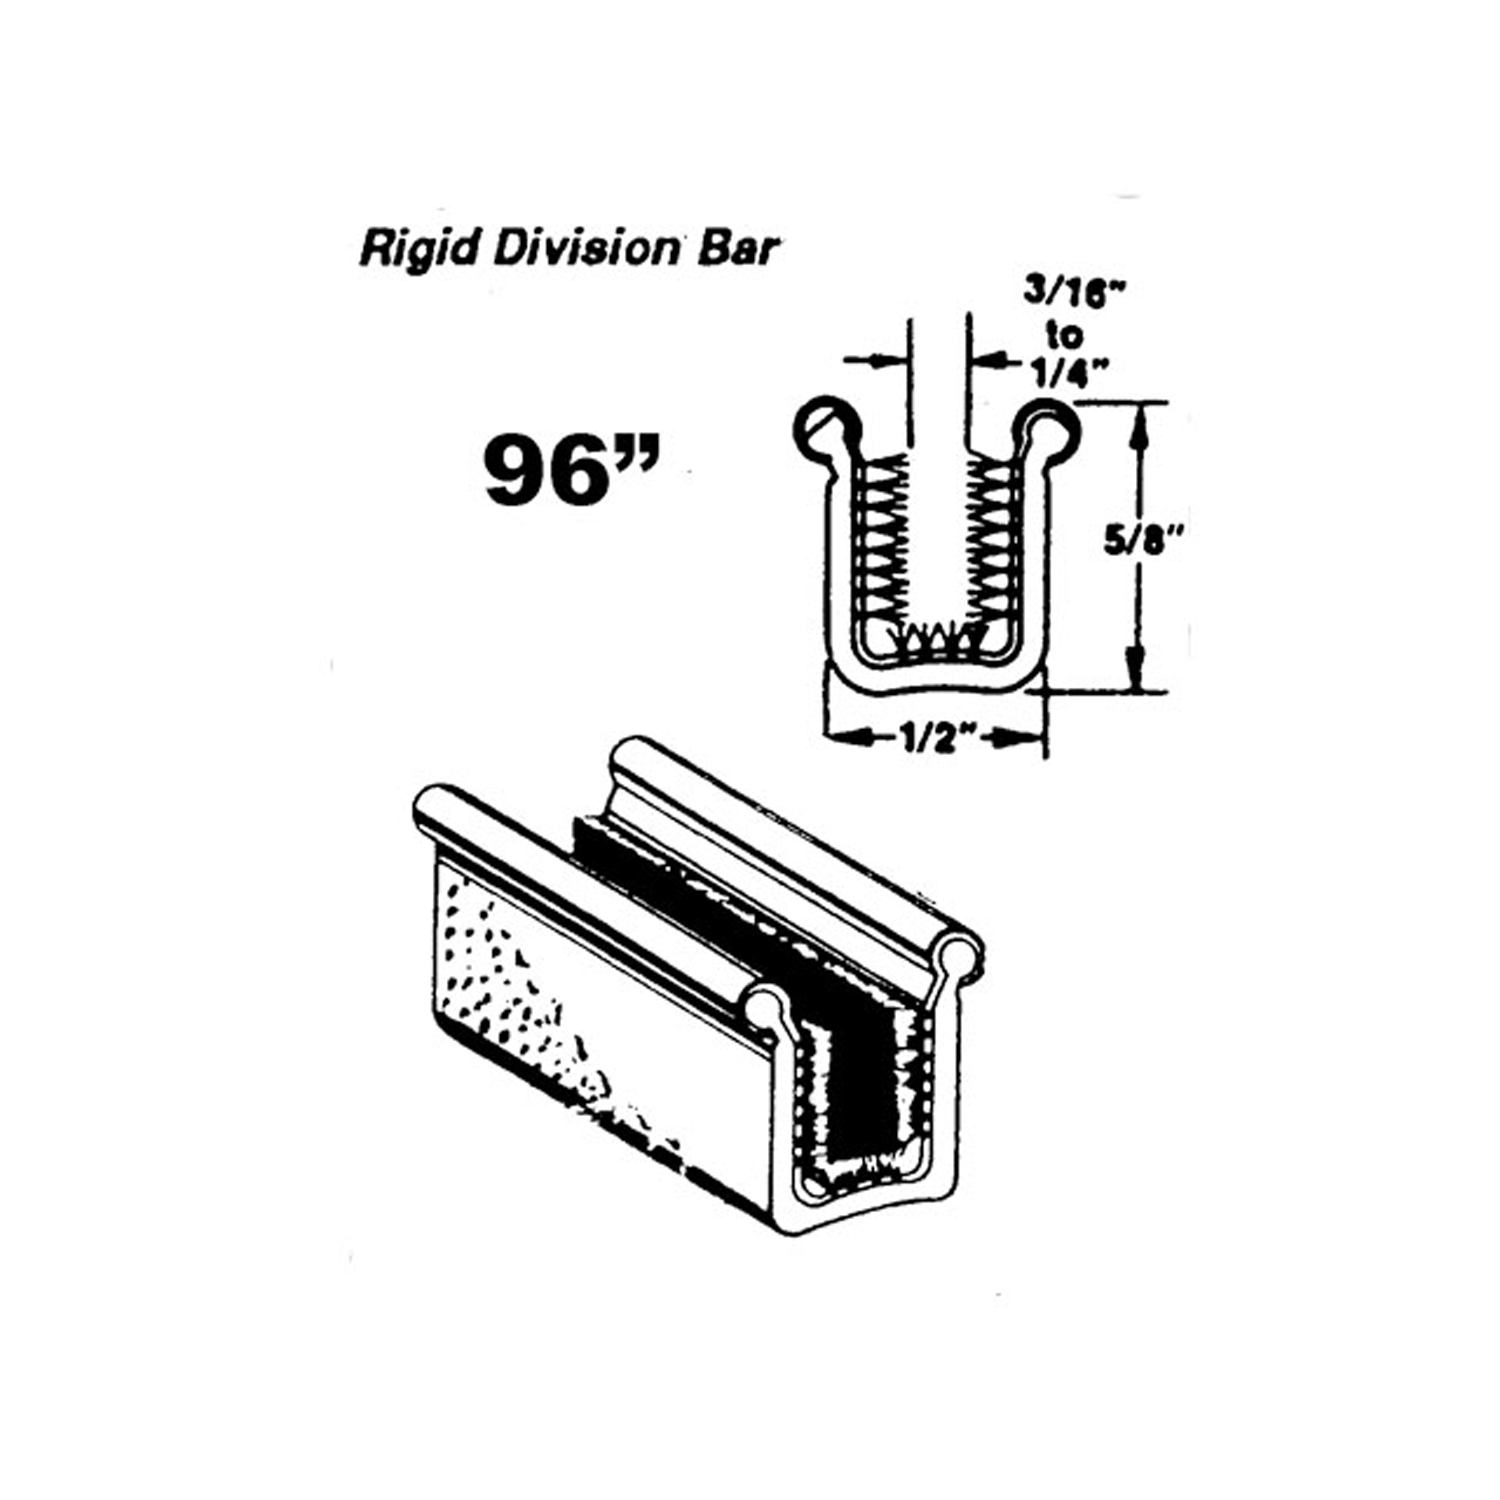 1961 Ford Ranch Wagon Rigid division-bar channel-WC 28-96